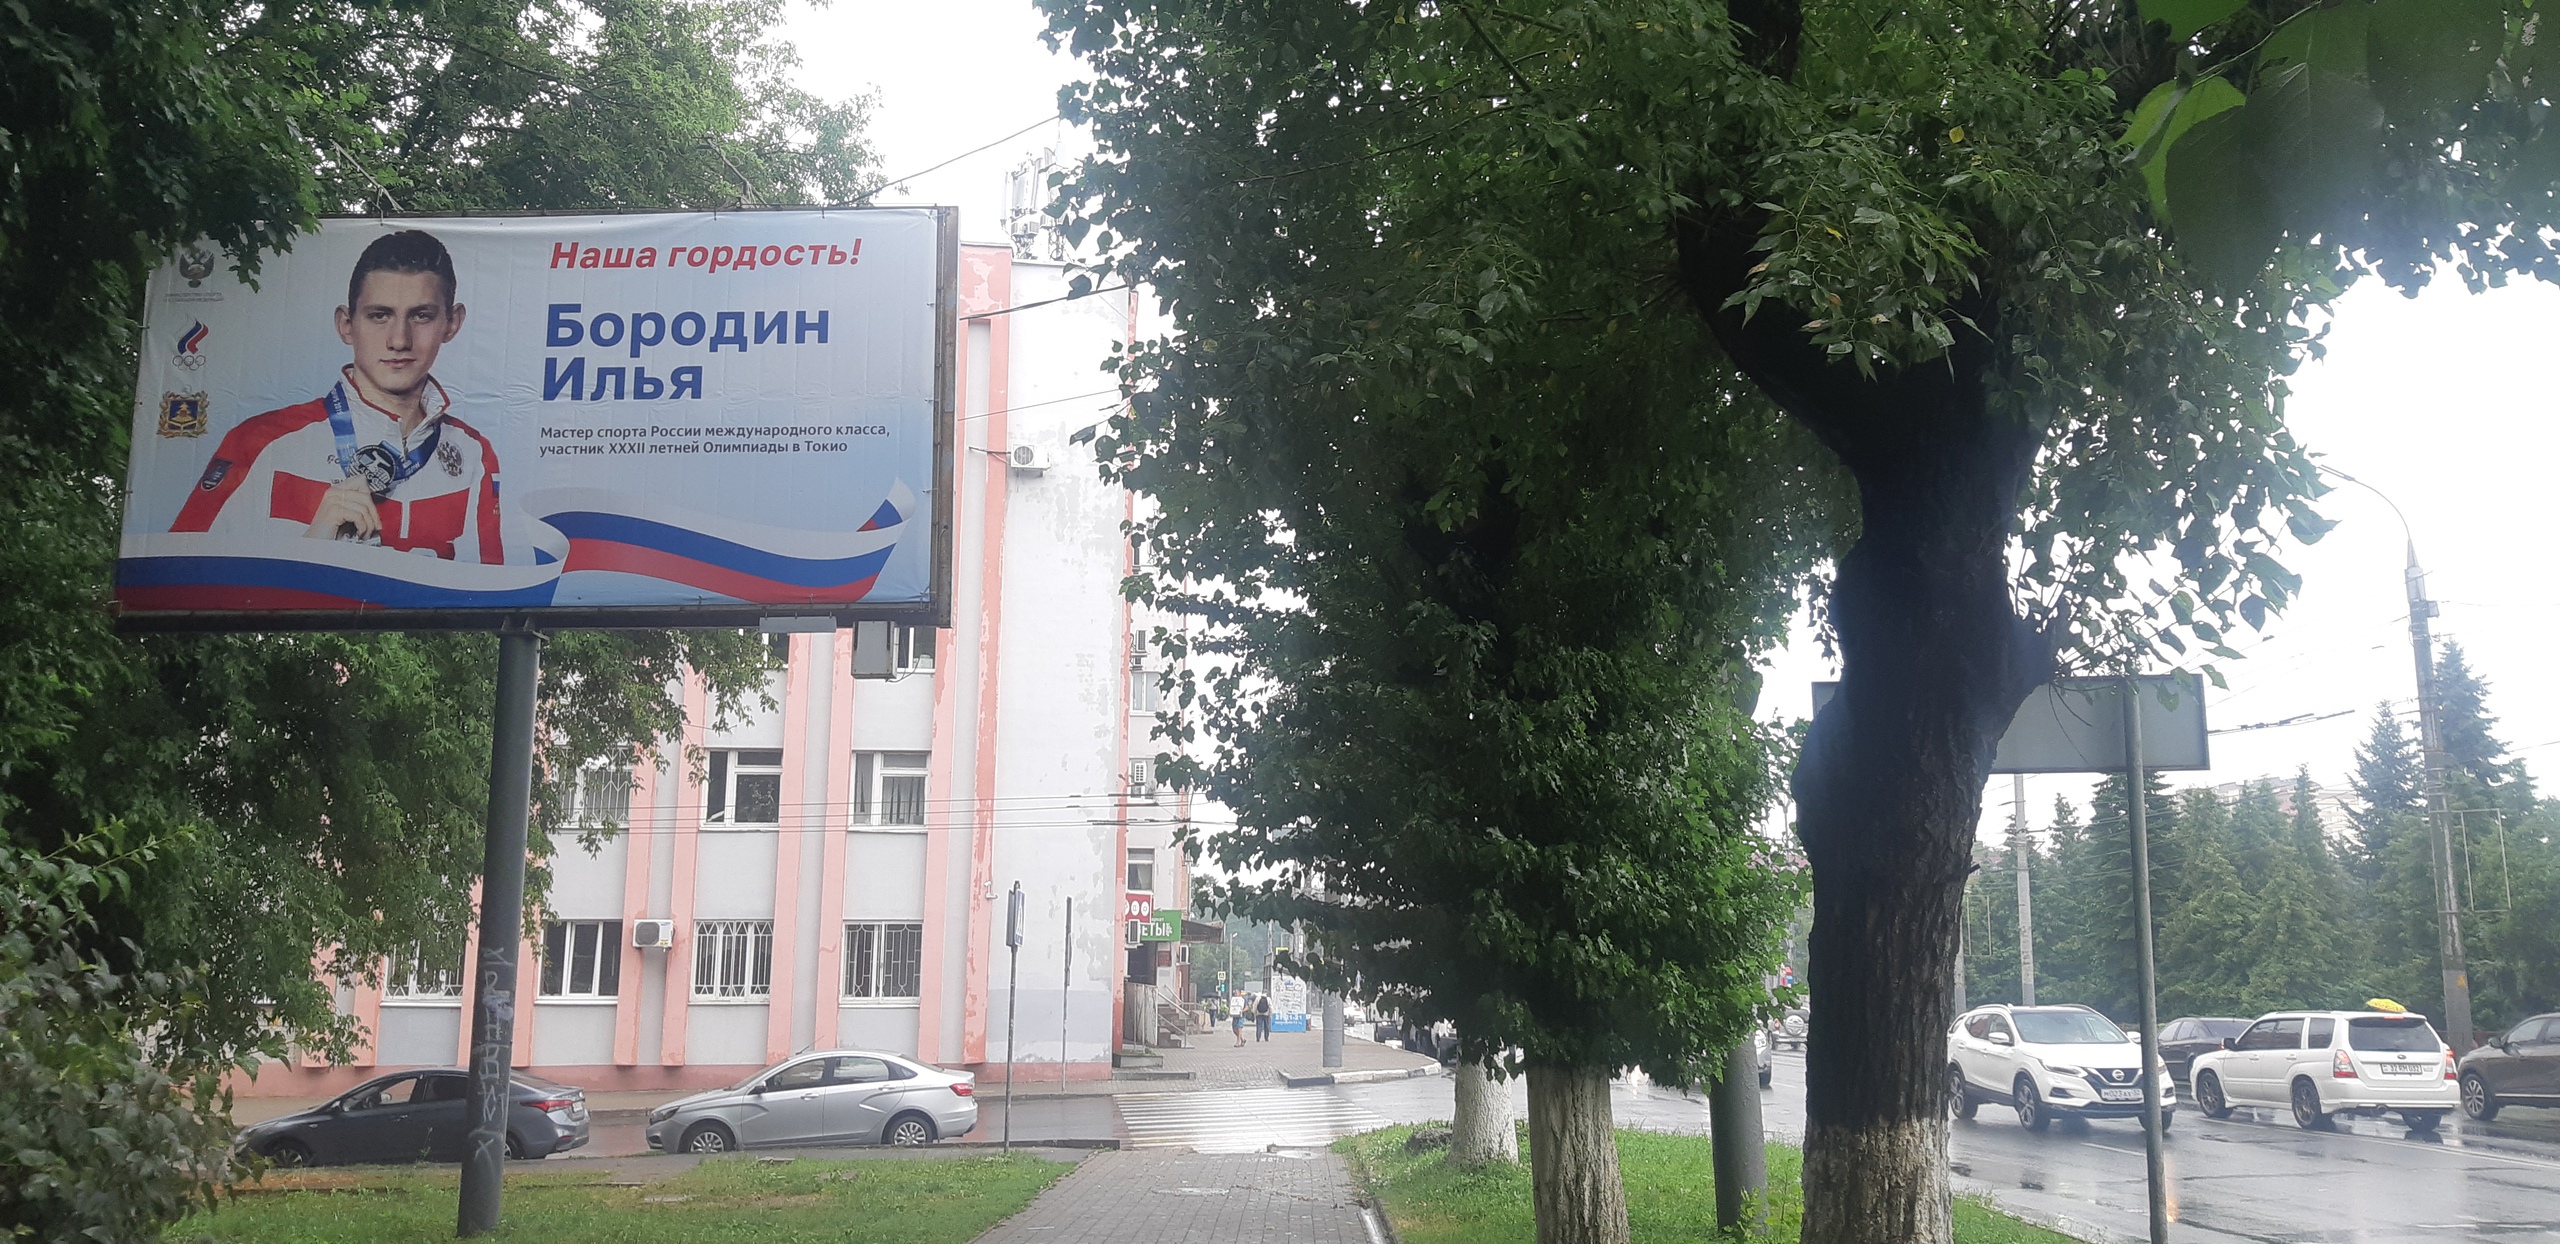 В поддержку олимпийца Ильи Бородина в Брянске появился огромный баннер